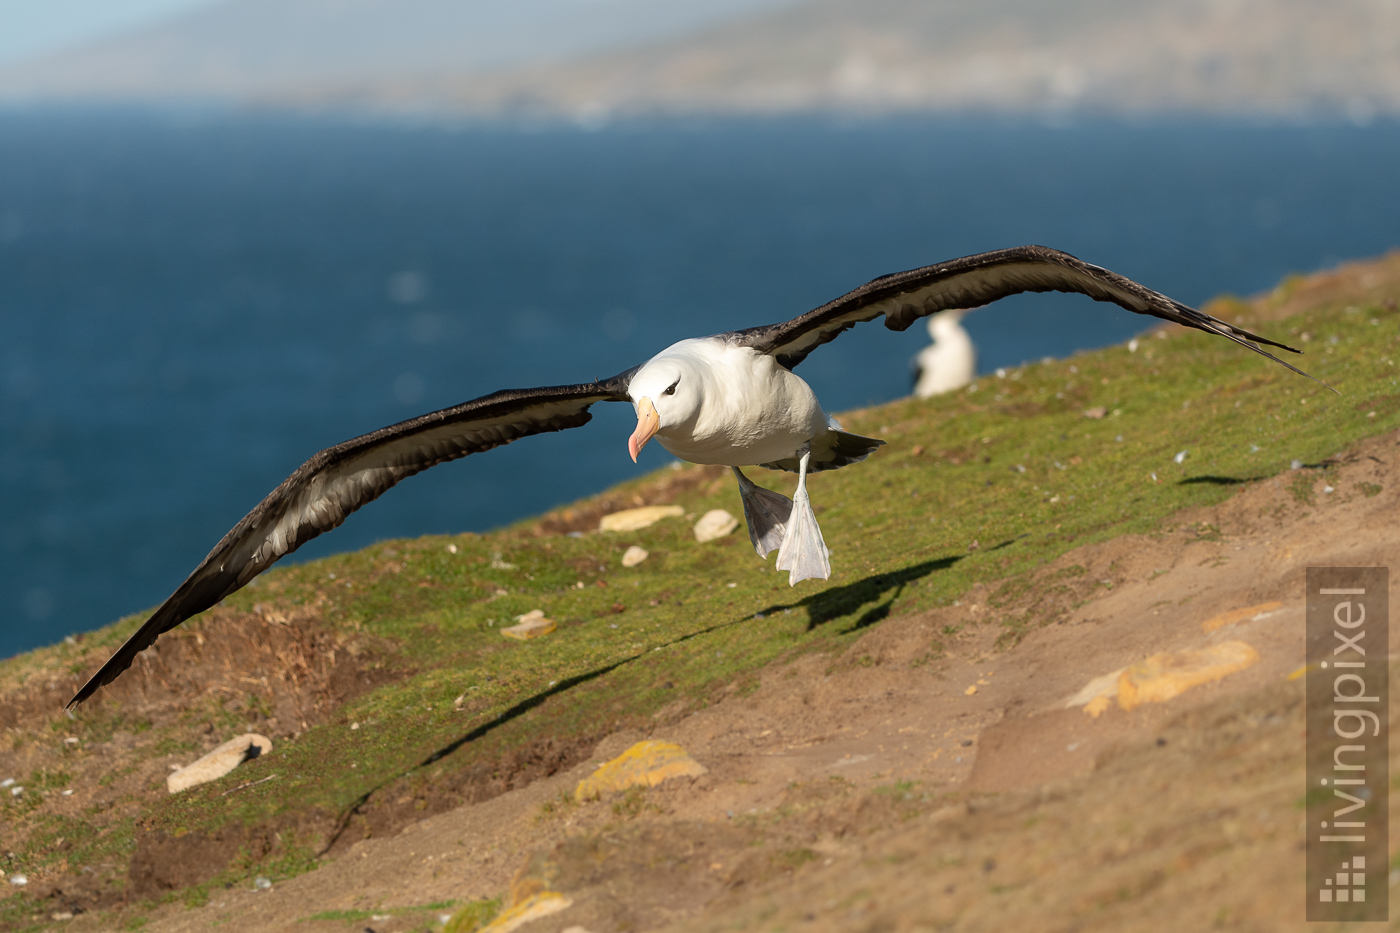 Schwarzbrauenalbatros (Black-browed albatross)